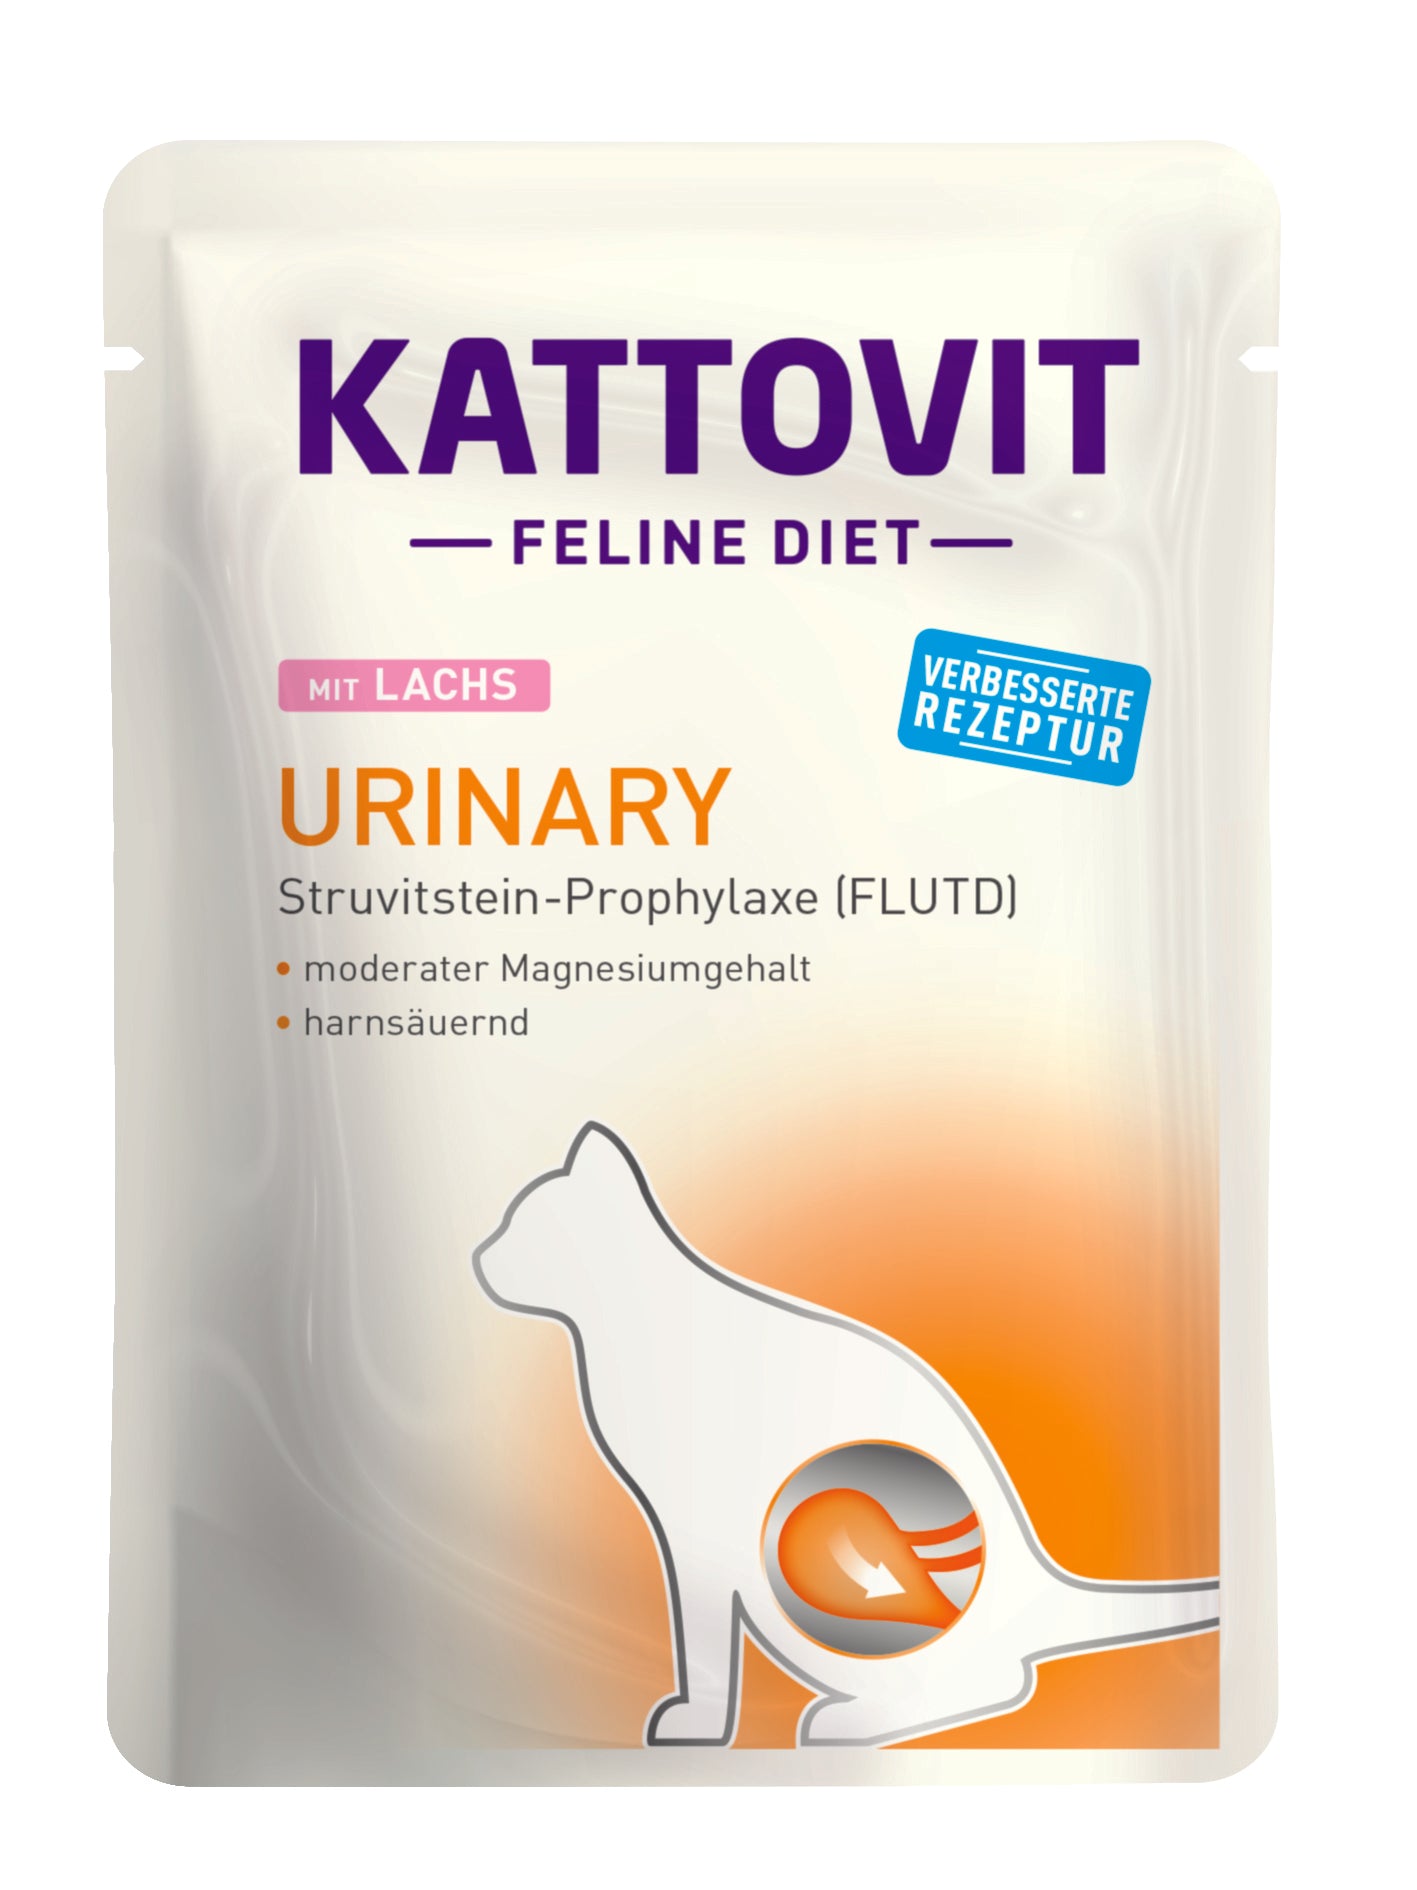 Artikel mit dem Namen Kattovit Feline Diet Urinary mit Lachs im Shop von zoo.de , dem Onlineshop für nachhaltiges Hundefutter und Katzenfutter.